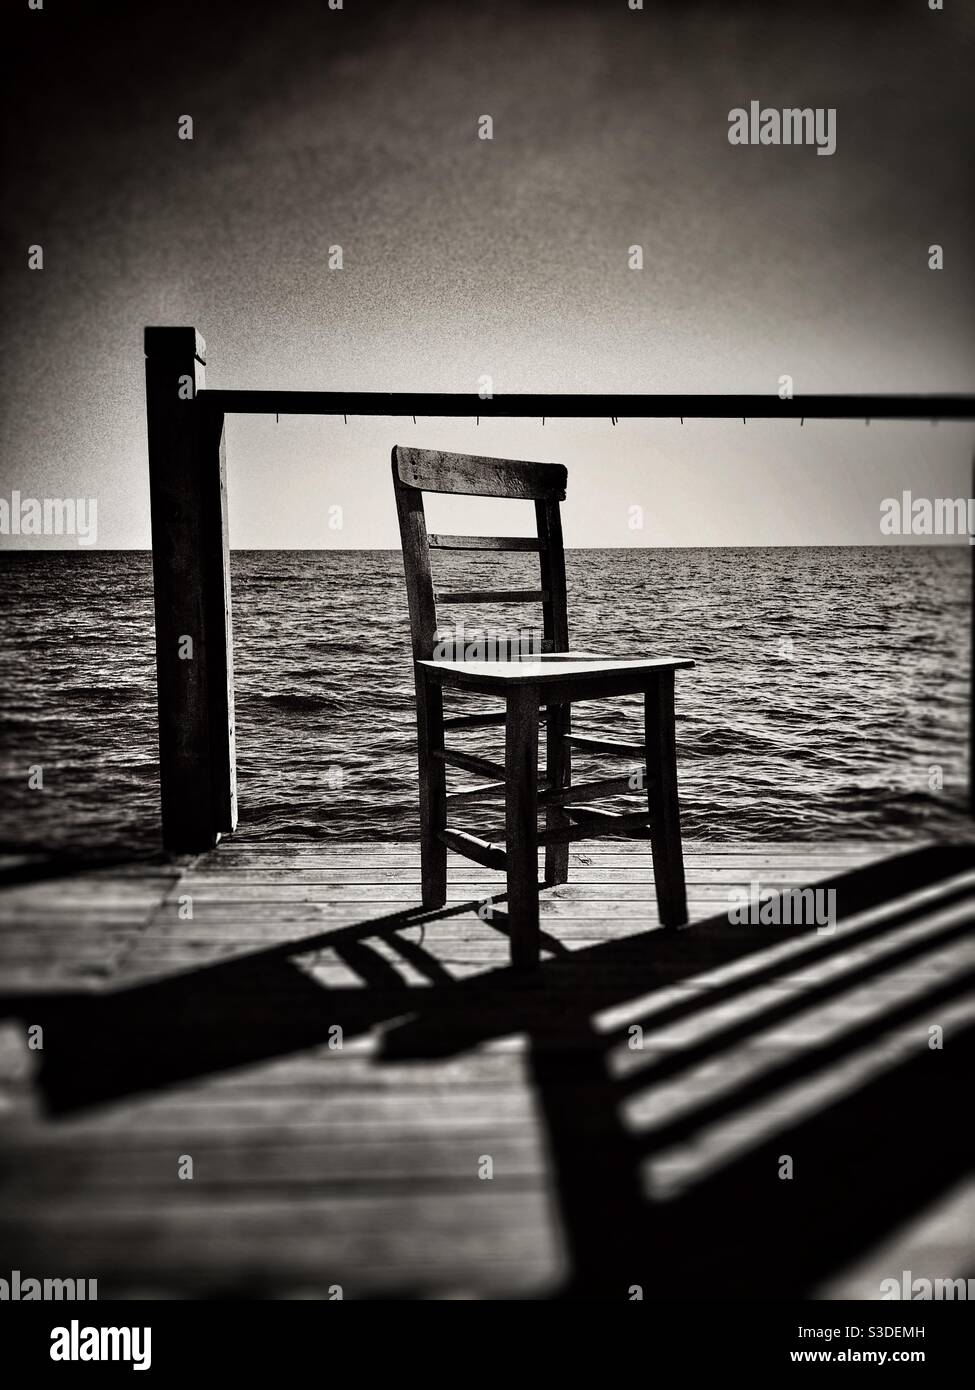 Image à contraste élevé d'une chaise vide laissée par le mer Banque D'Images